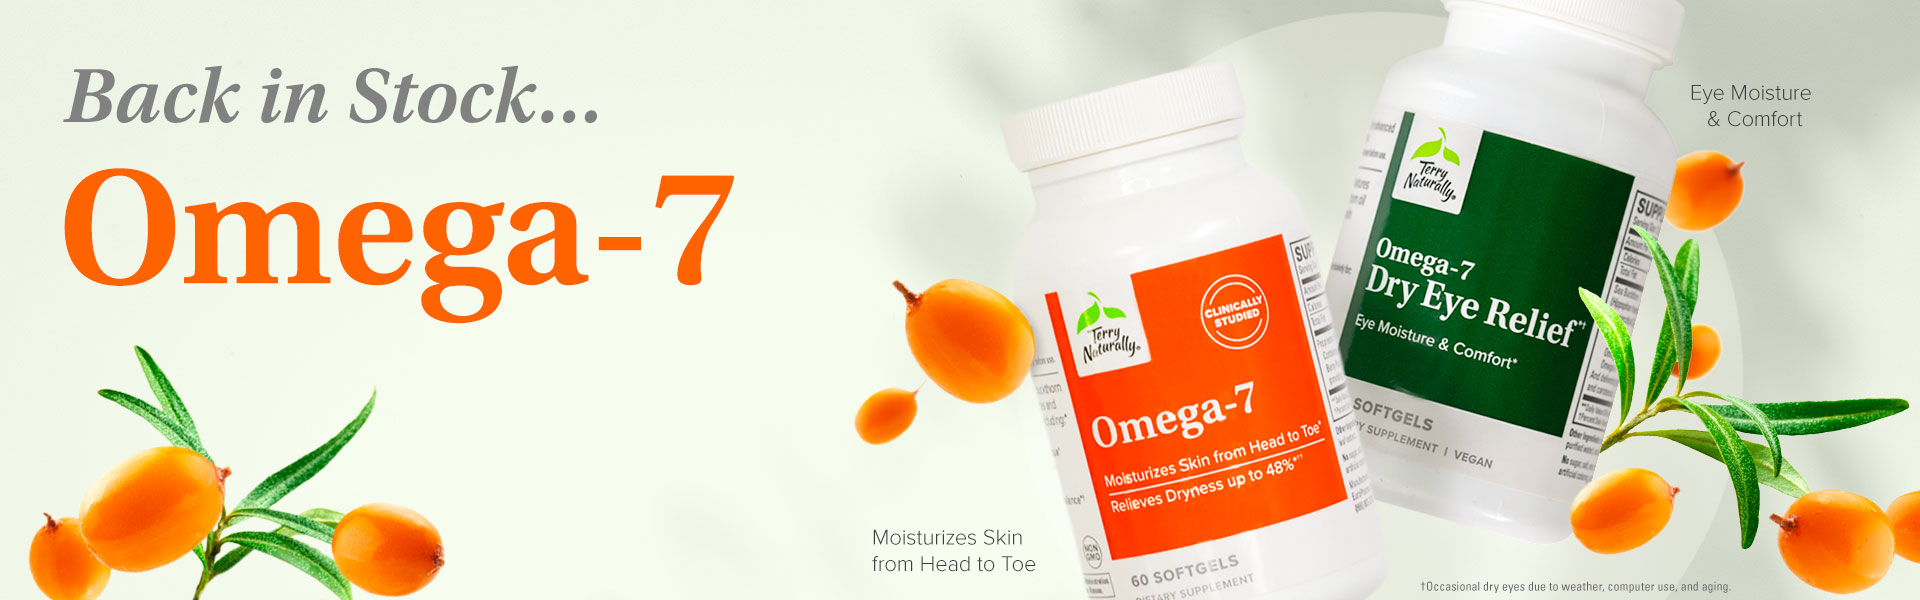 Back in Stock...OMEGA-7 • Omega-7 & Omega-7 Dry Eye Relief*†